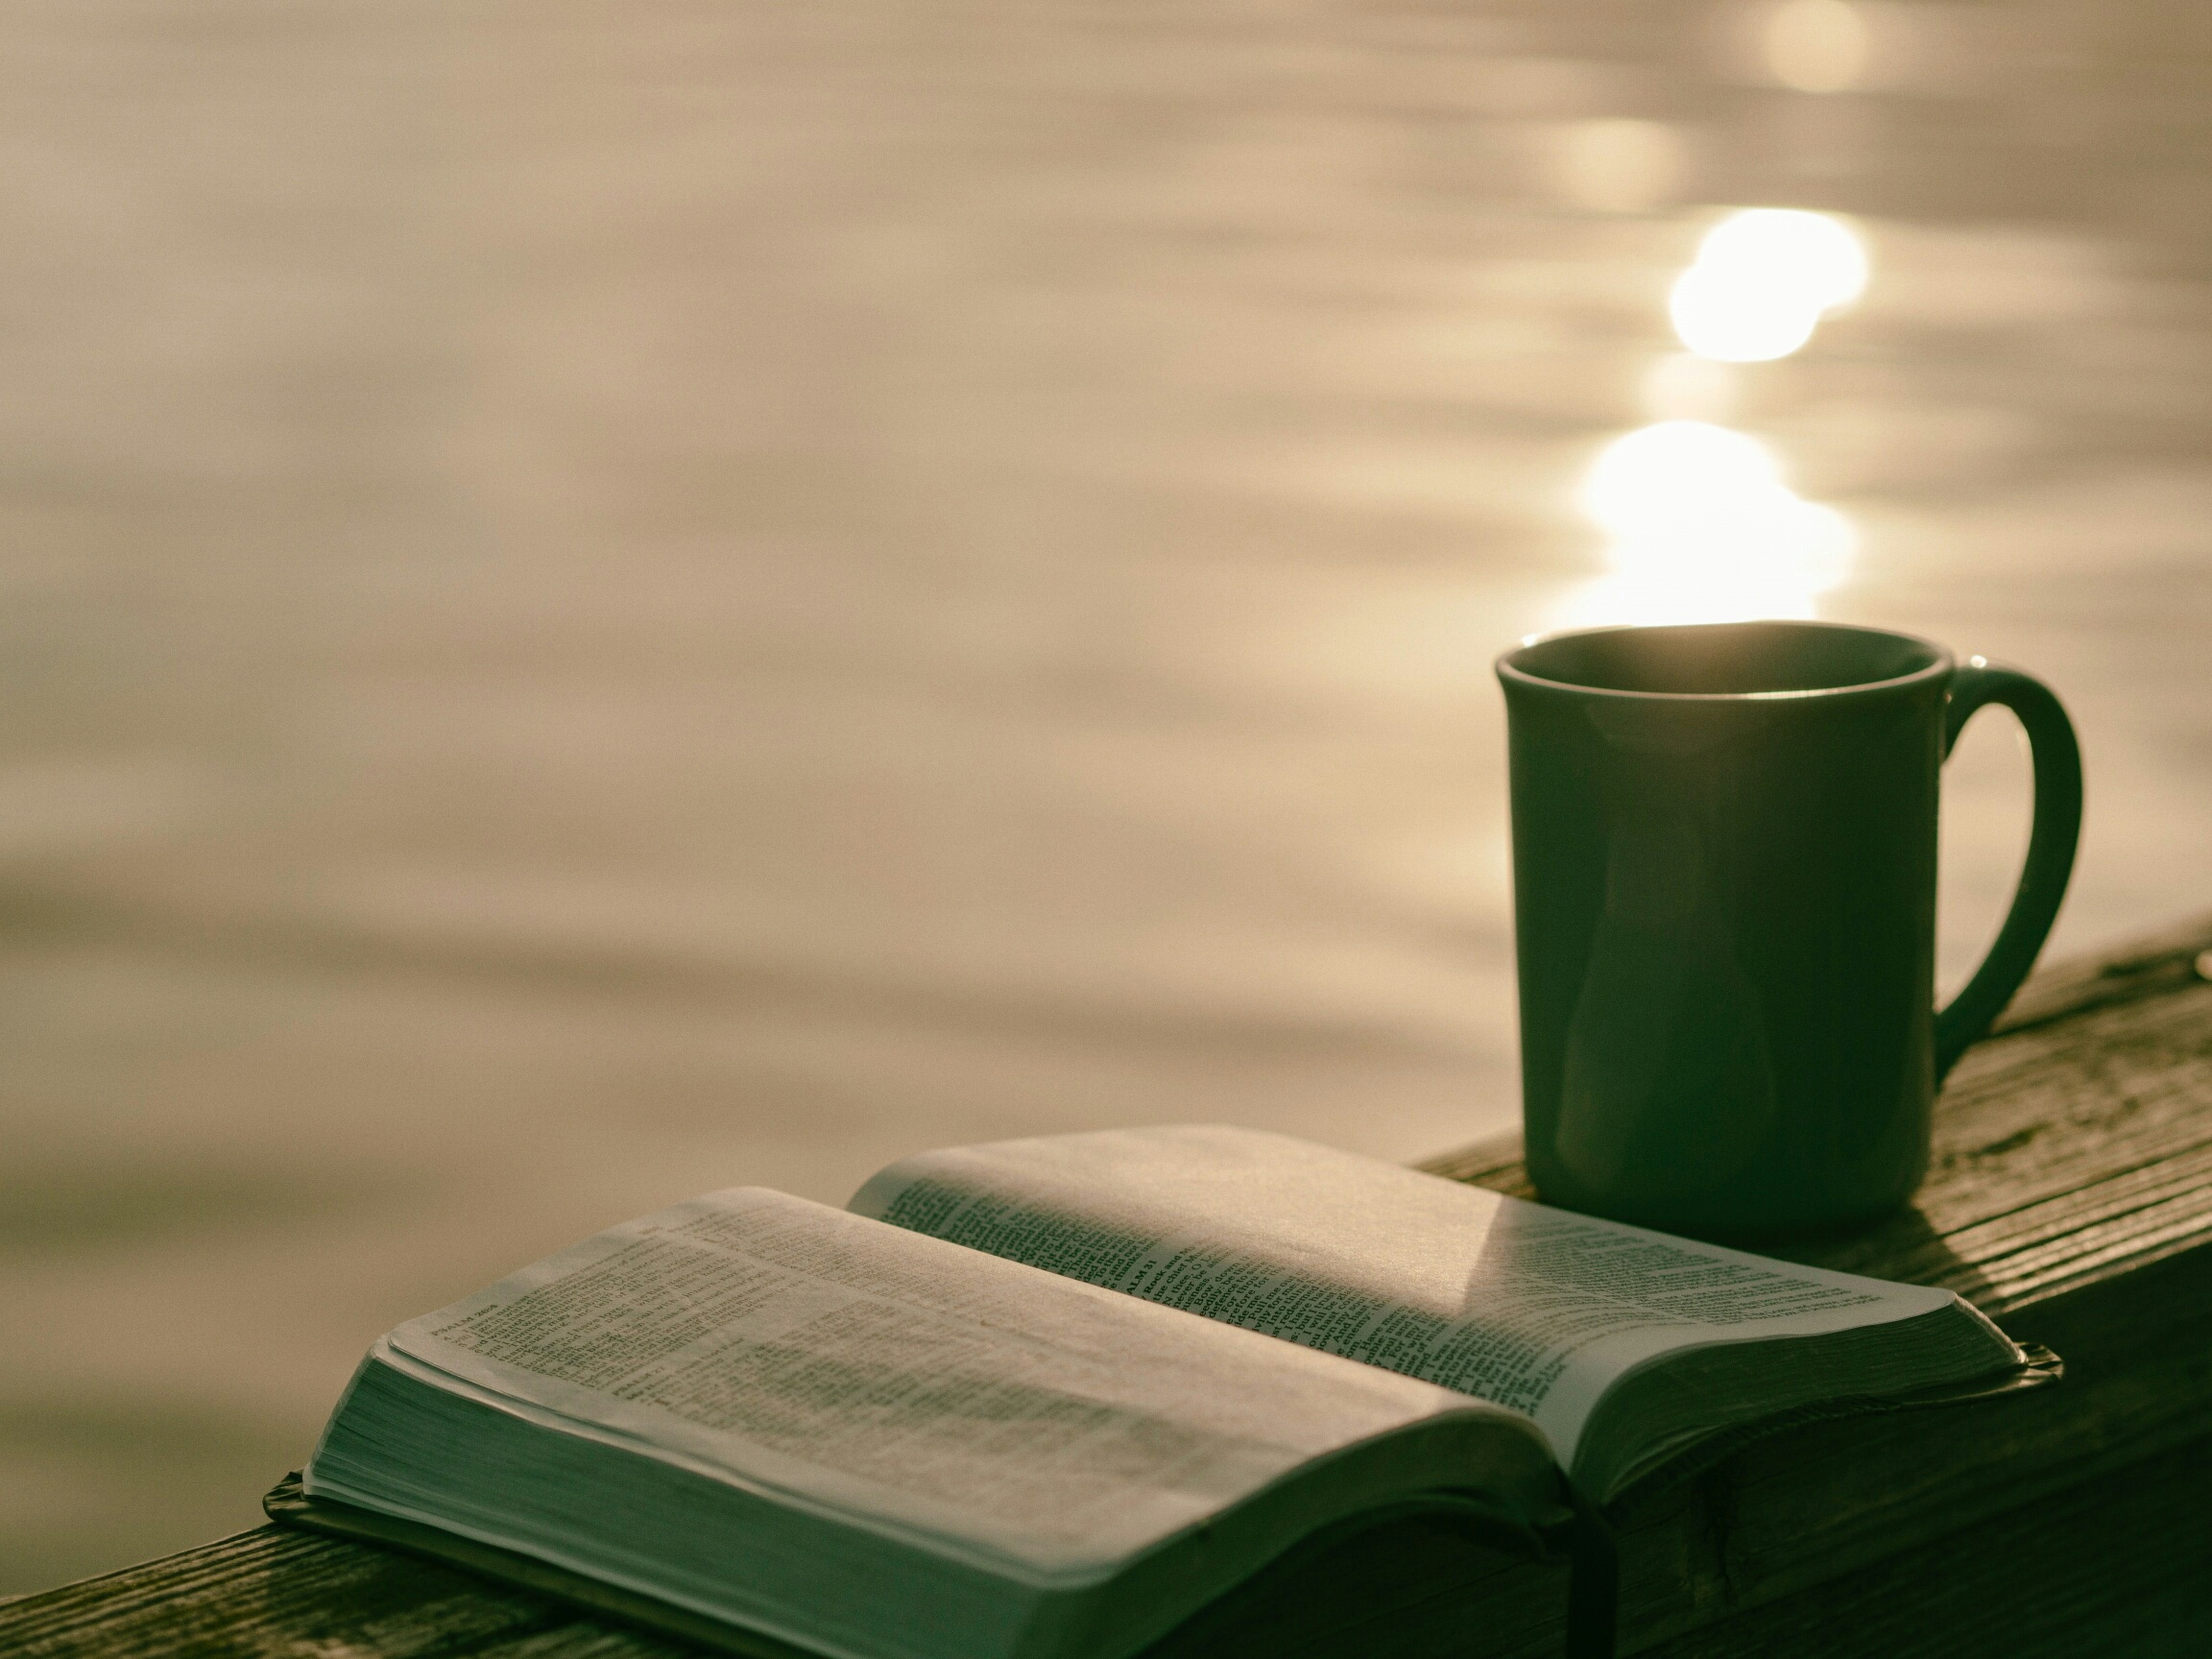 tassa i llibre davant el llac